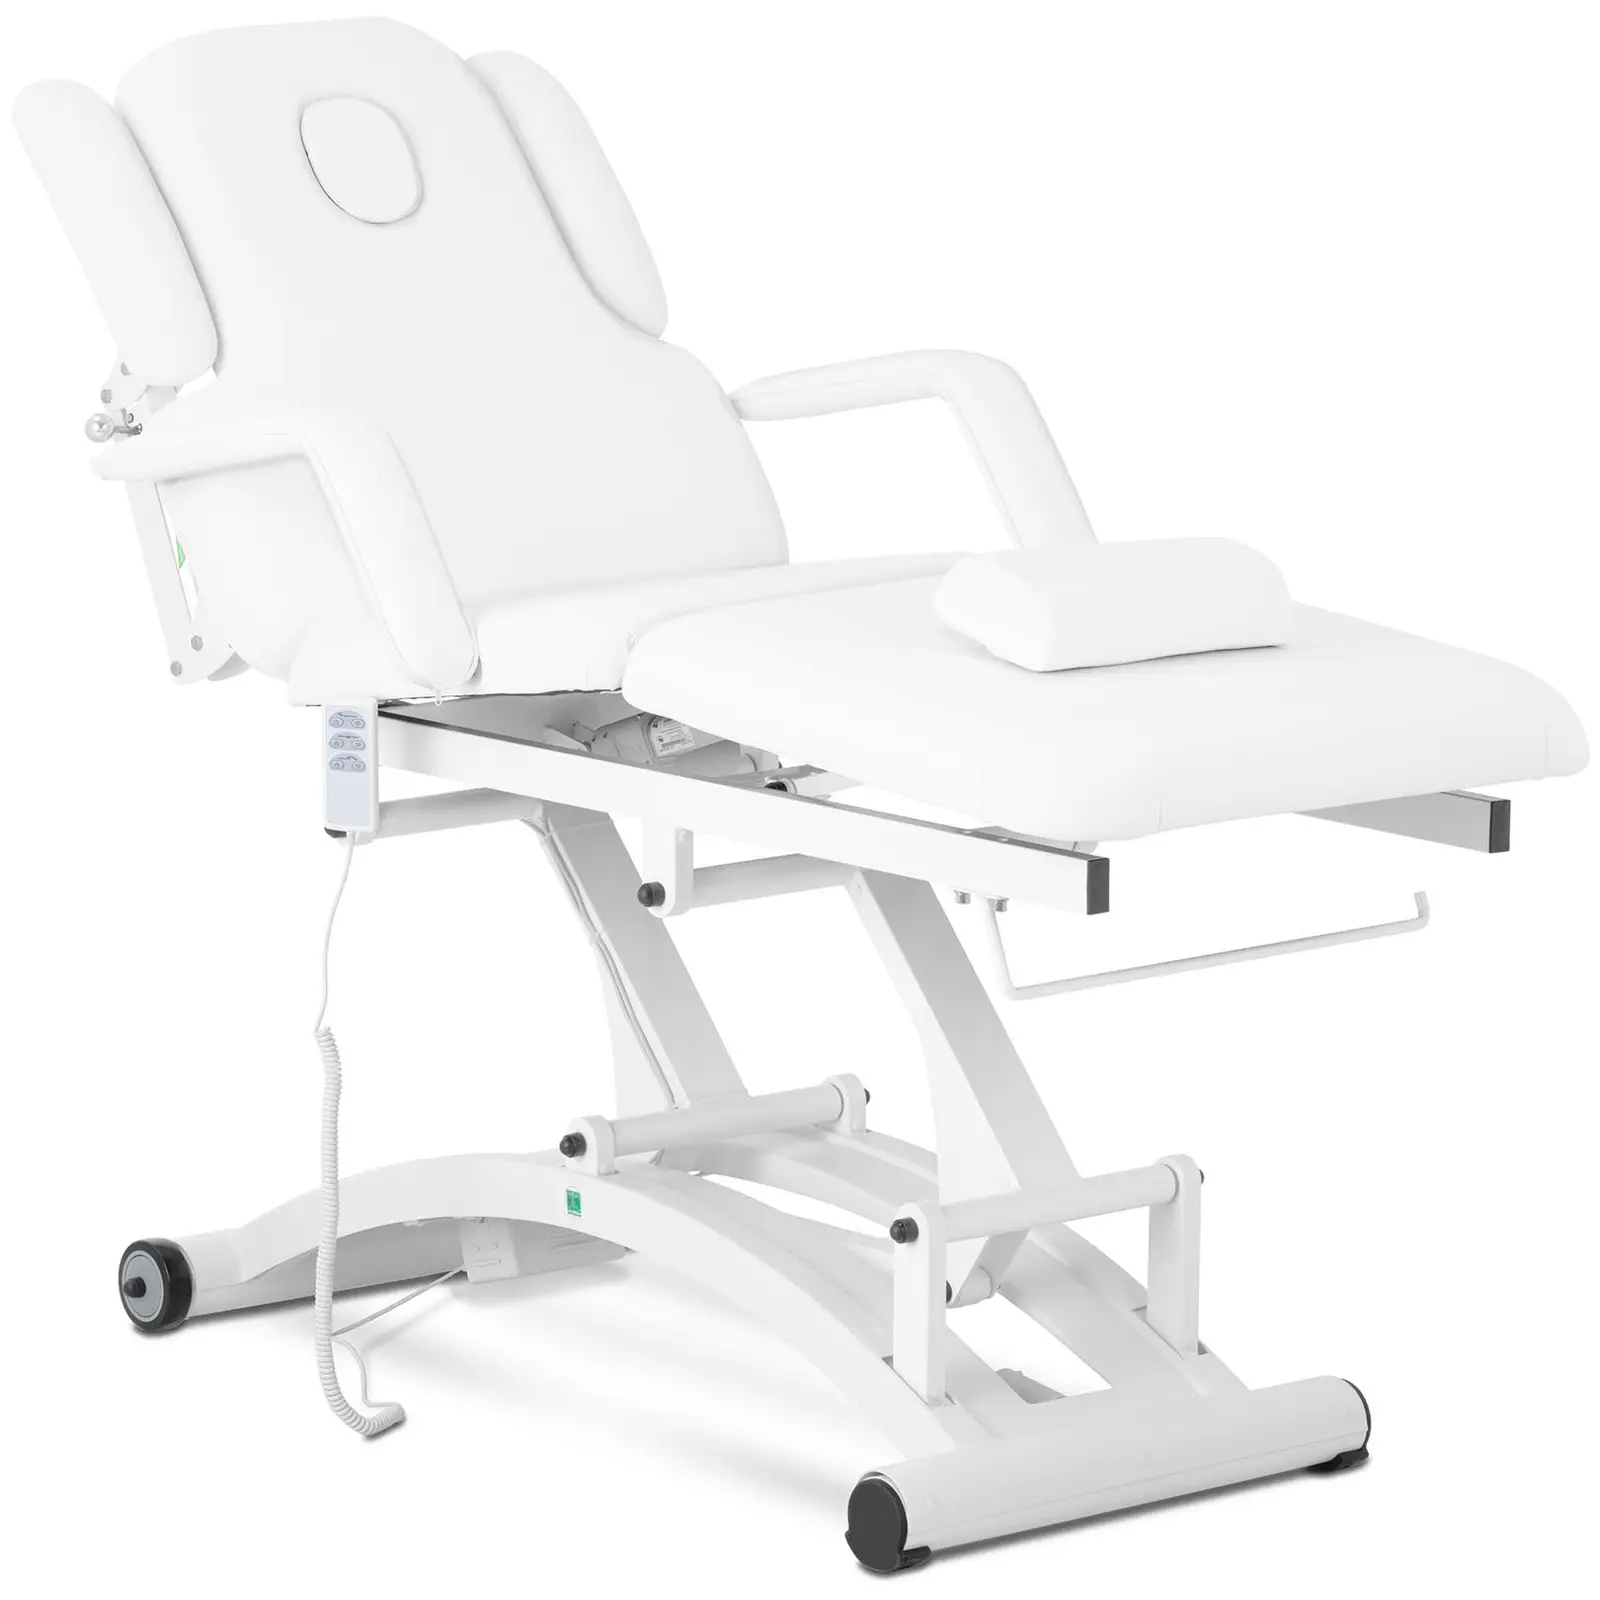 Table de massage électrique - 260 W - 200 kg - Blanc